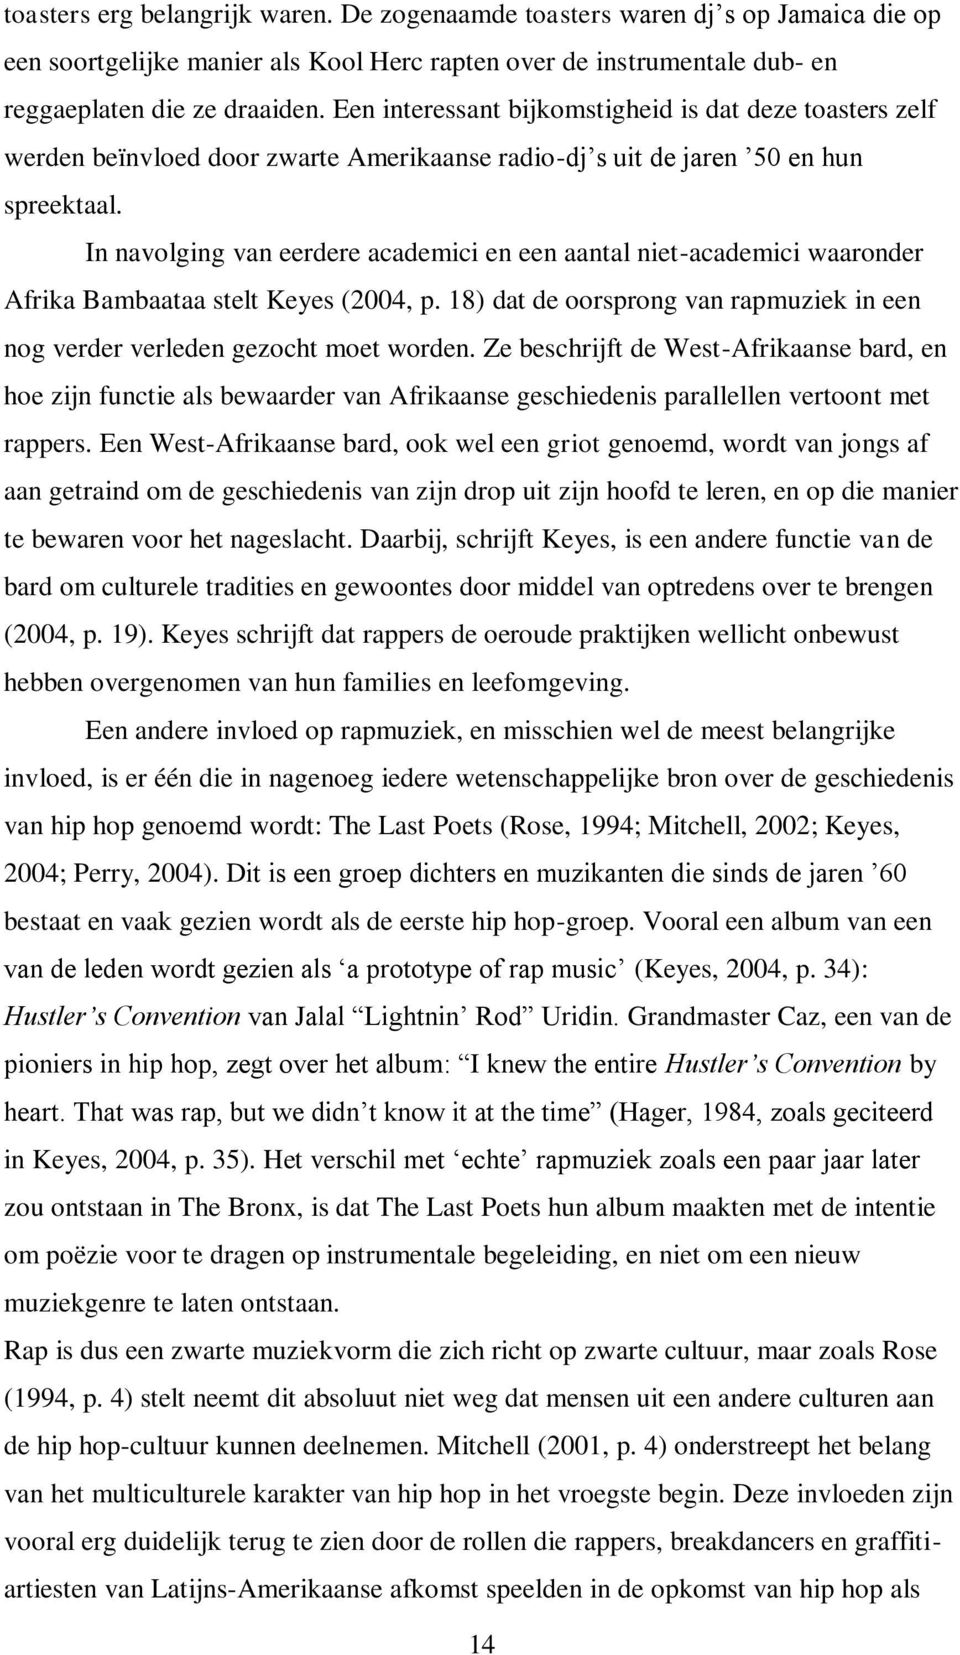 In navolging van eerdere academici en een aantal niet-academici waaronder Afrika Bambaataa stelt Keyes (2004, p. 18) dat de oorsprong van rapmuziek in een nog verder verleden gezocht moet worden.